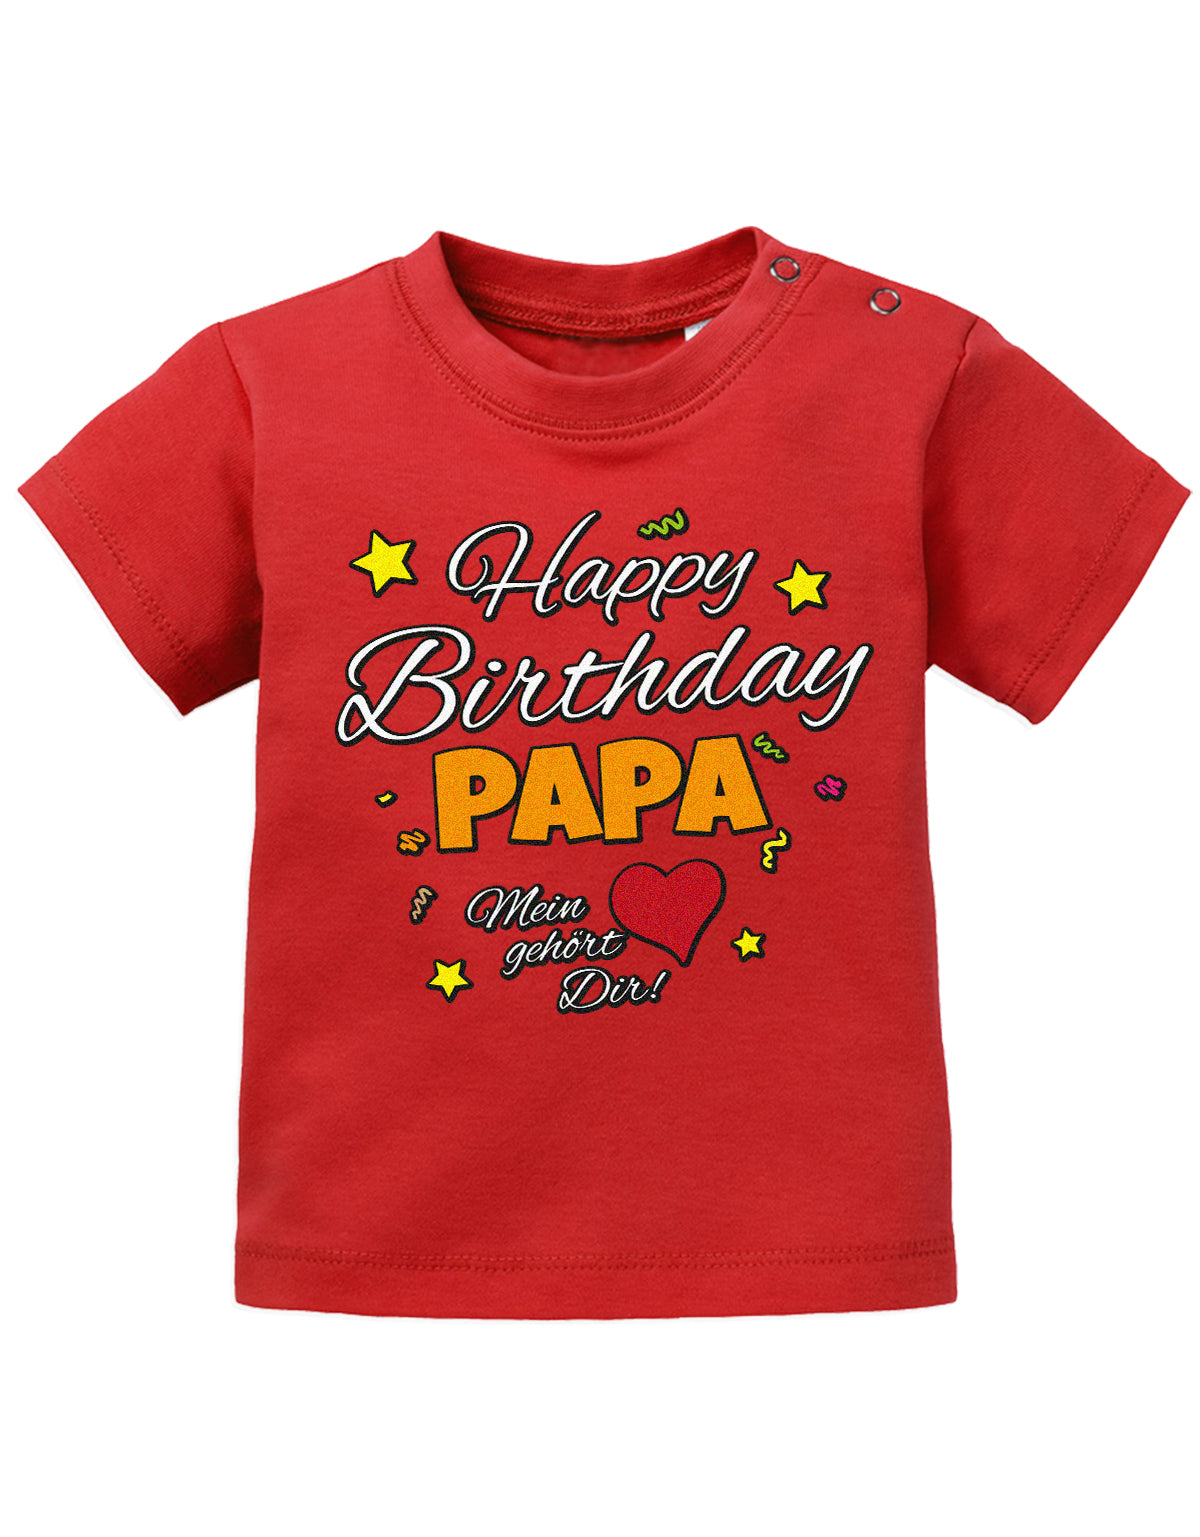 Papa Spruch Baby Shirt. Happy Birthday, Papa, mein Herz gehört Dir. Rot